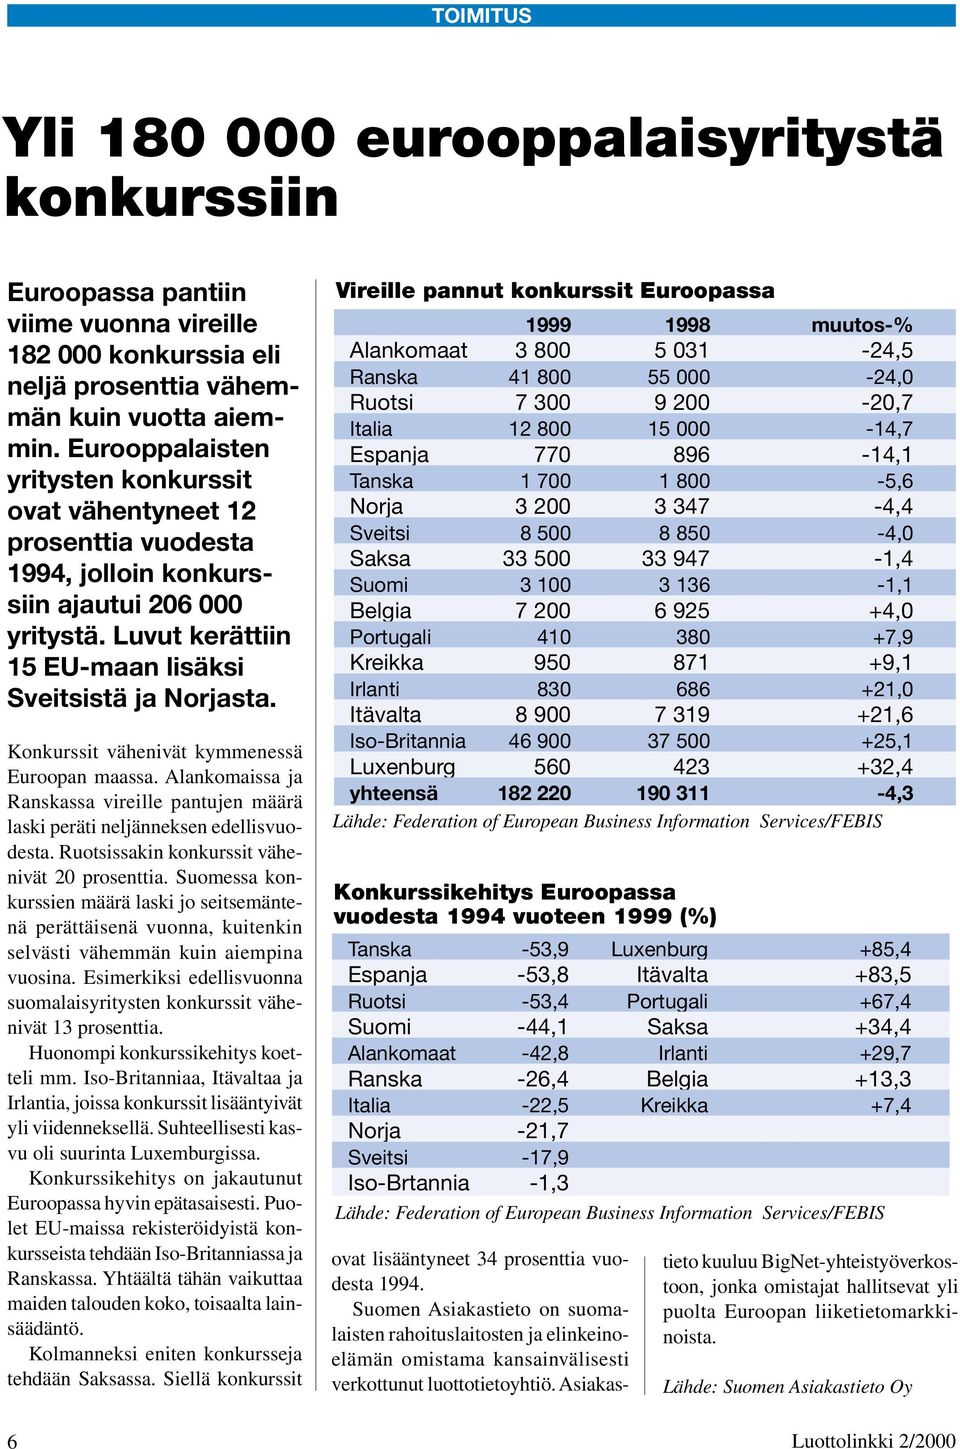 Konkurssit vähenivät kymmenessä Euroopan maassa. Alankomaissa ja Ranskassa vireille pantujen määrä laski peräti neljänneksen edellisvuodesta. Ruotsissakin konkurssit vähenivät 20 prosenttia.